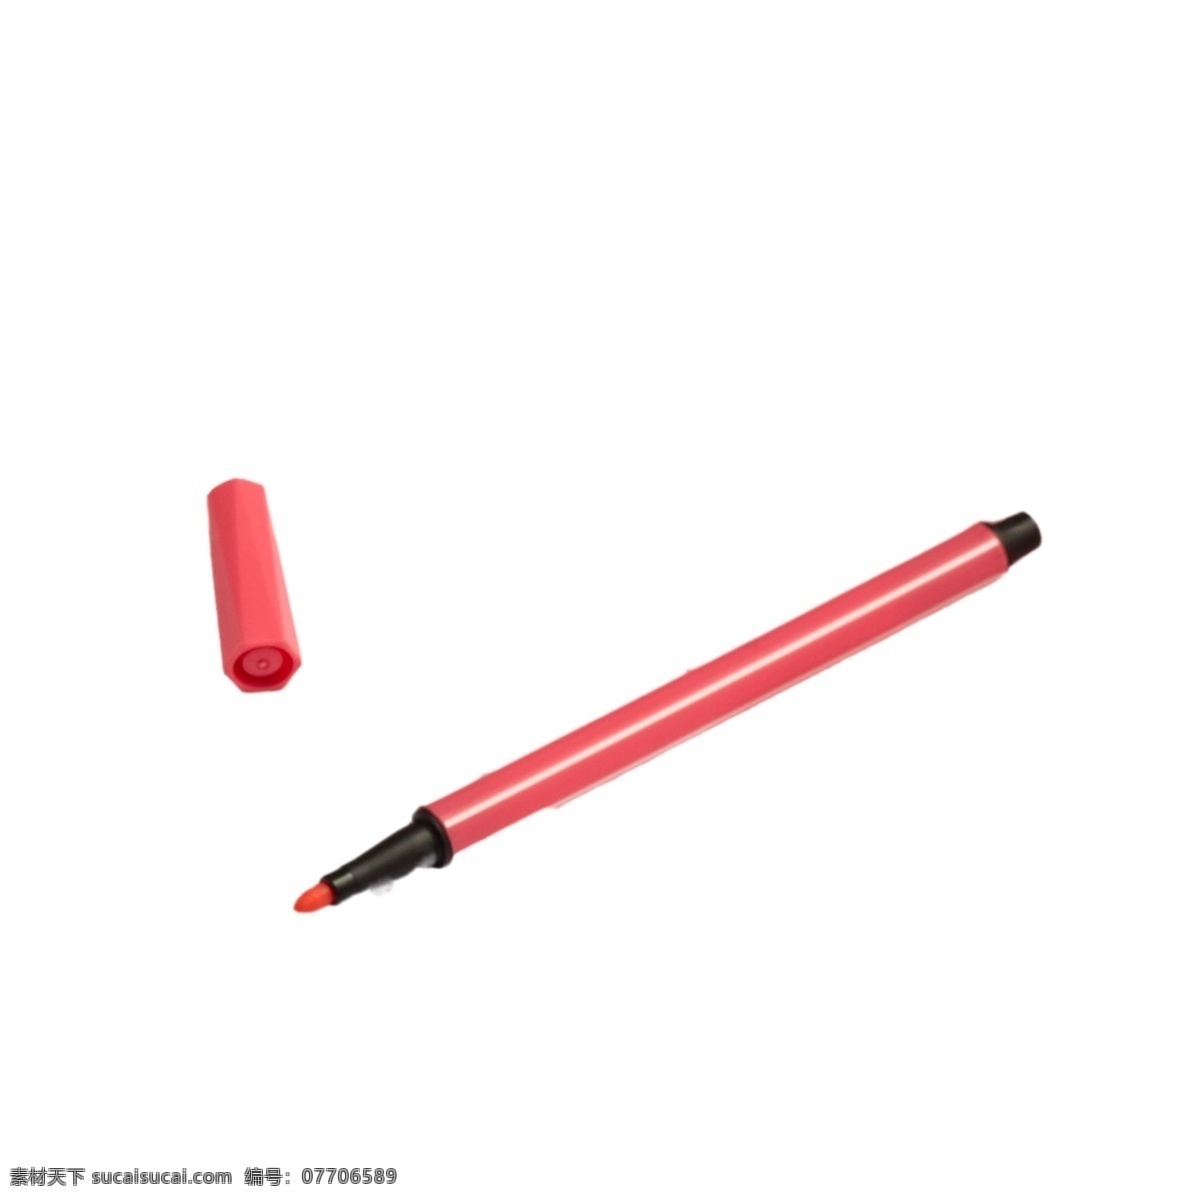 红色彩笔 彩笔 画笔 实物 实物免扣 实物下载